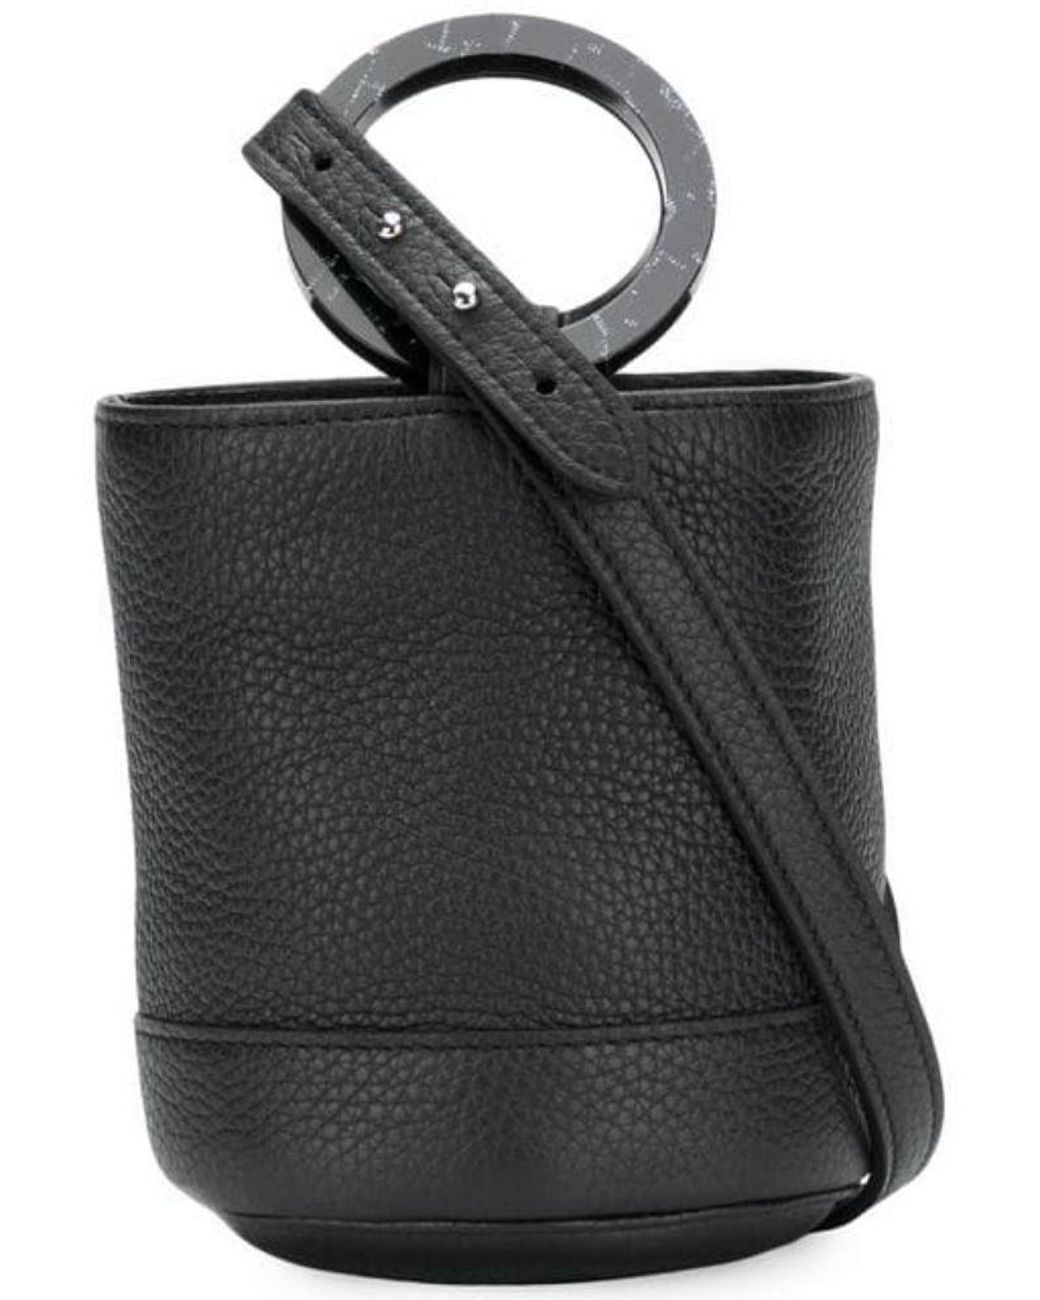 Simon Miller Black Leather Handbag in Black - Lyst